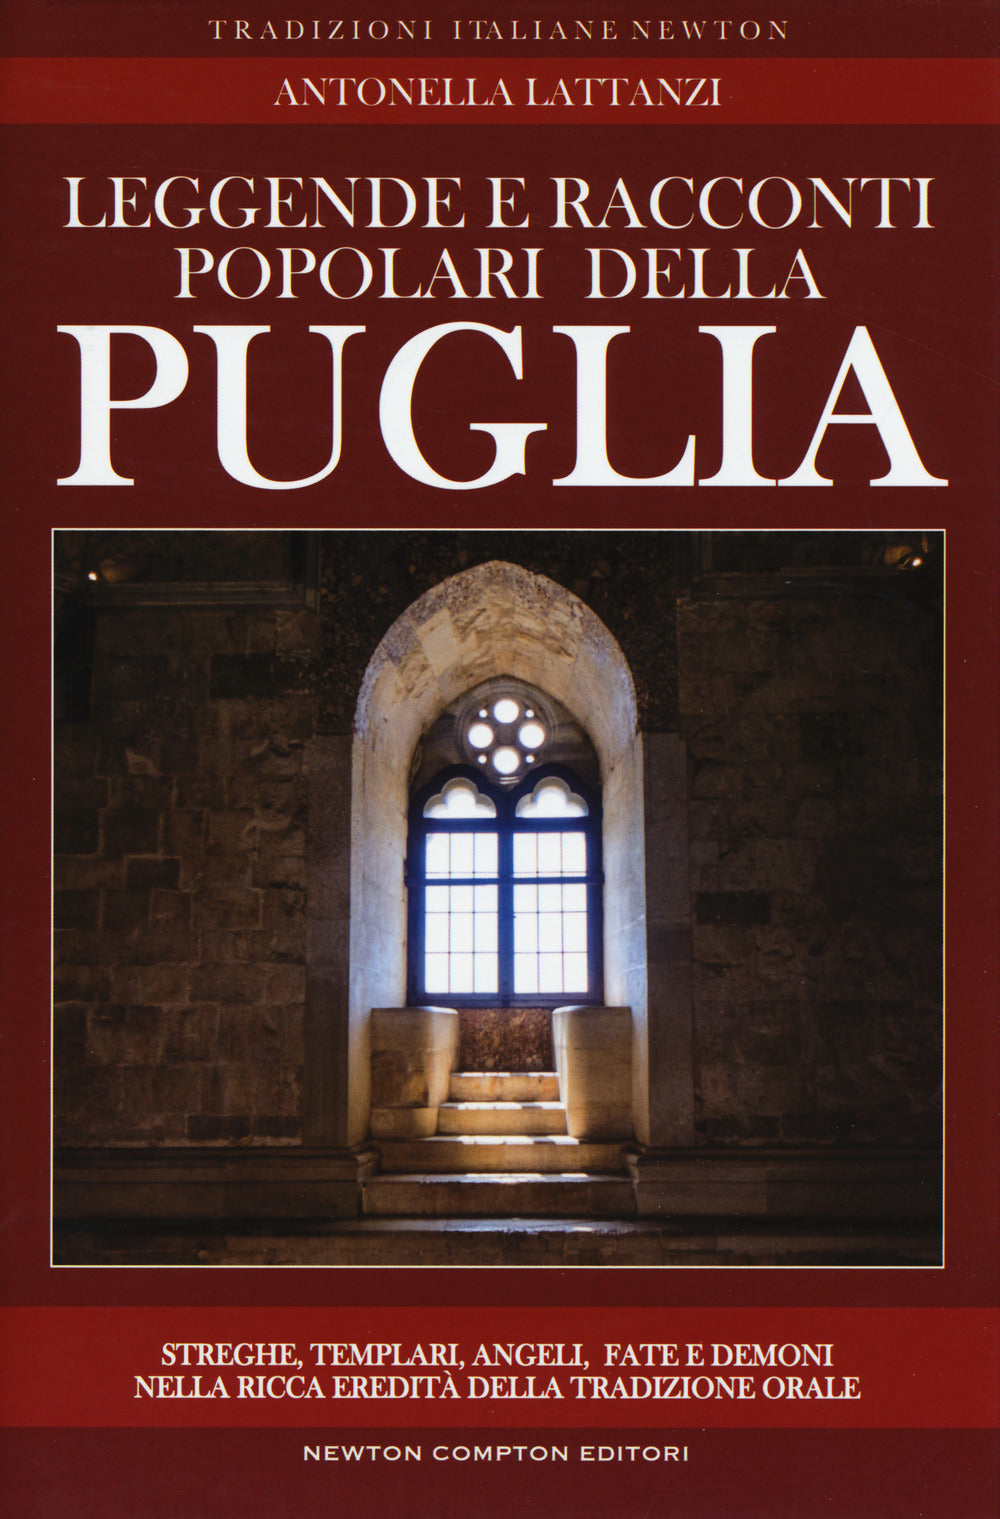 Leggende e racconti popolari della Puglia.